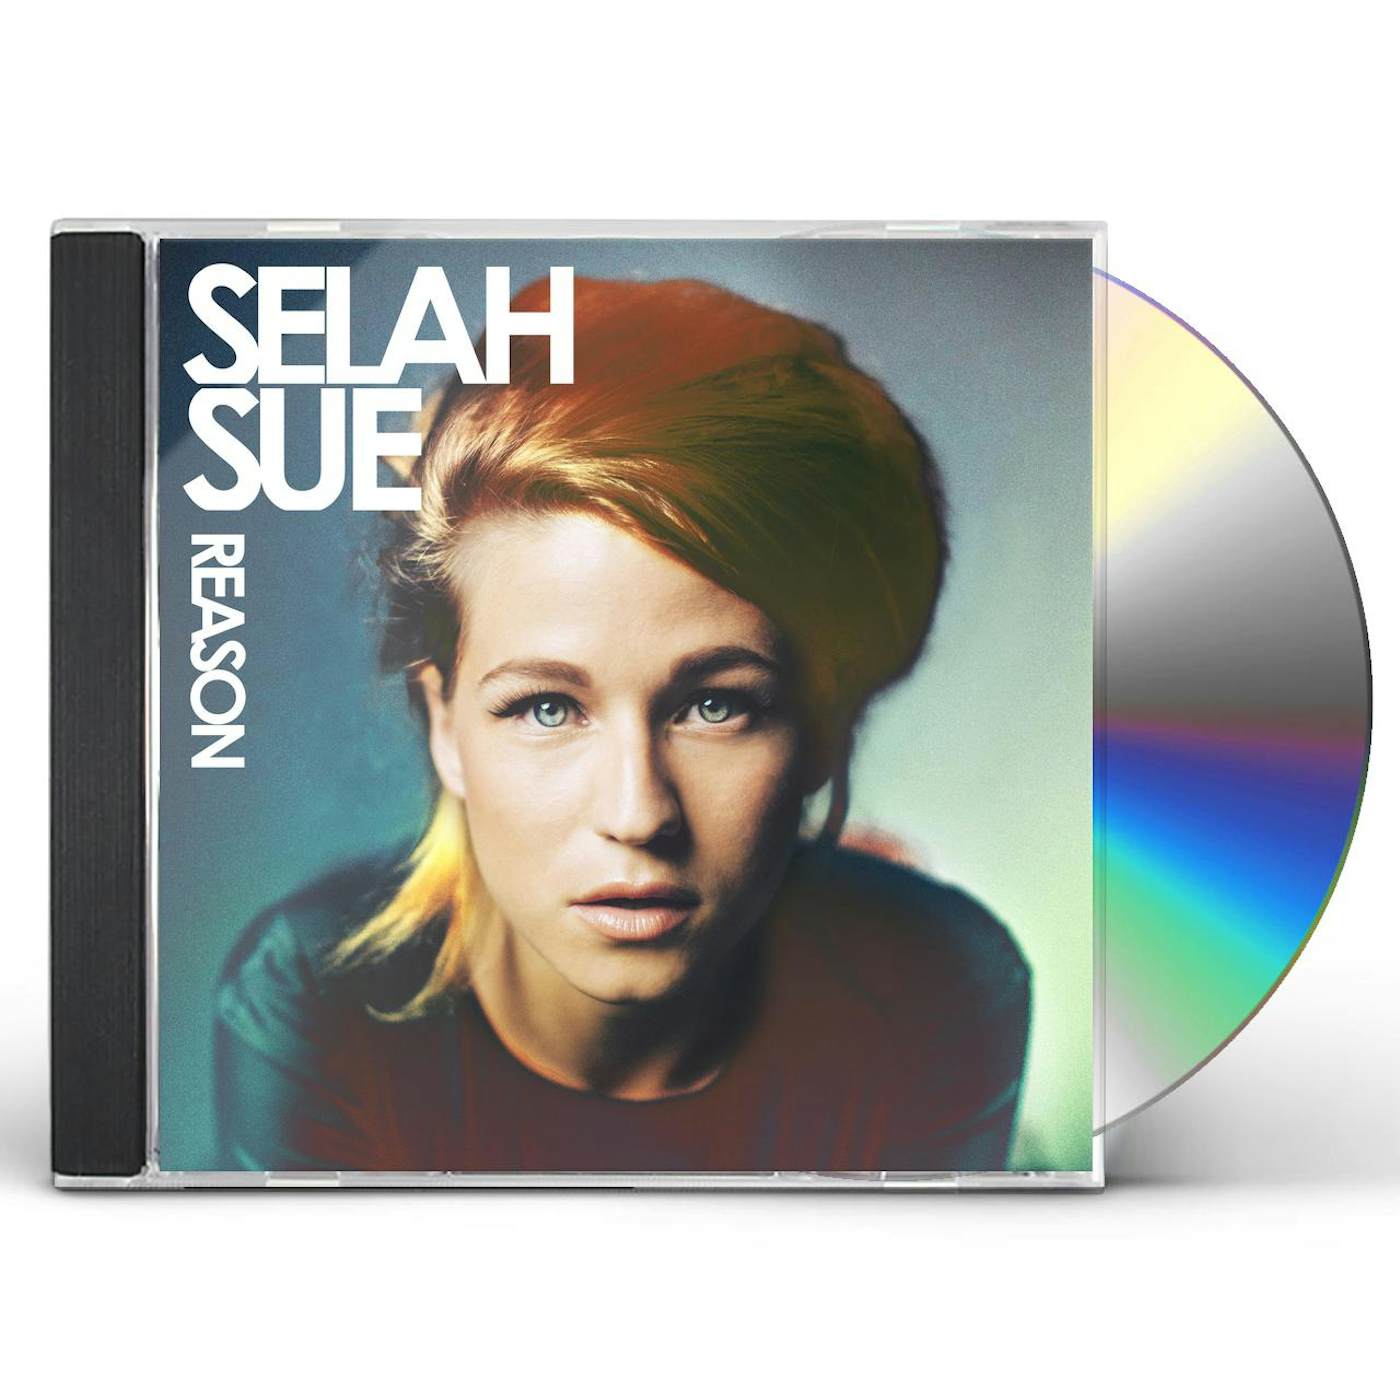 Selah Sue REASON CD